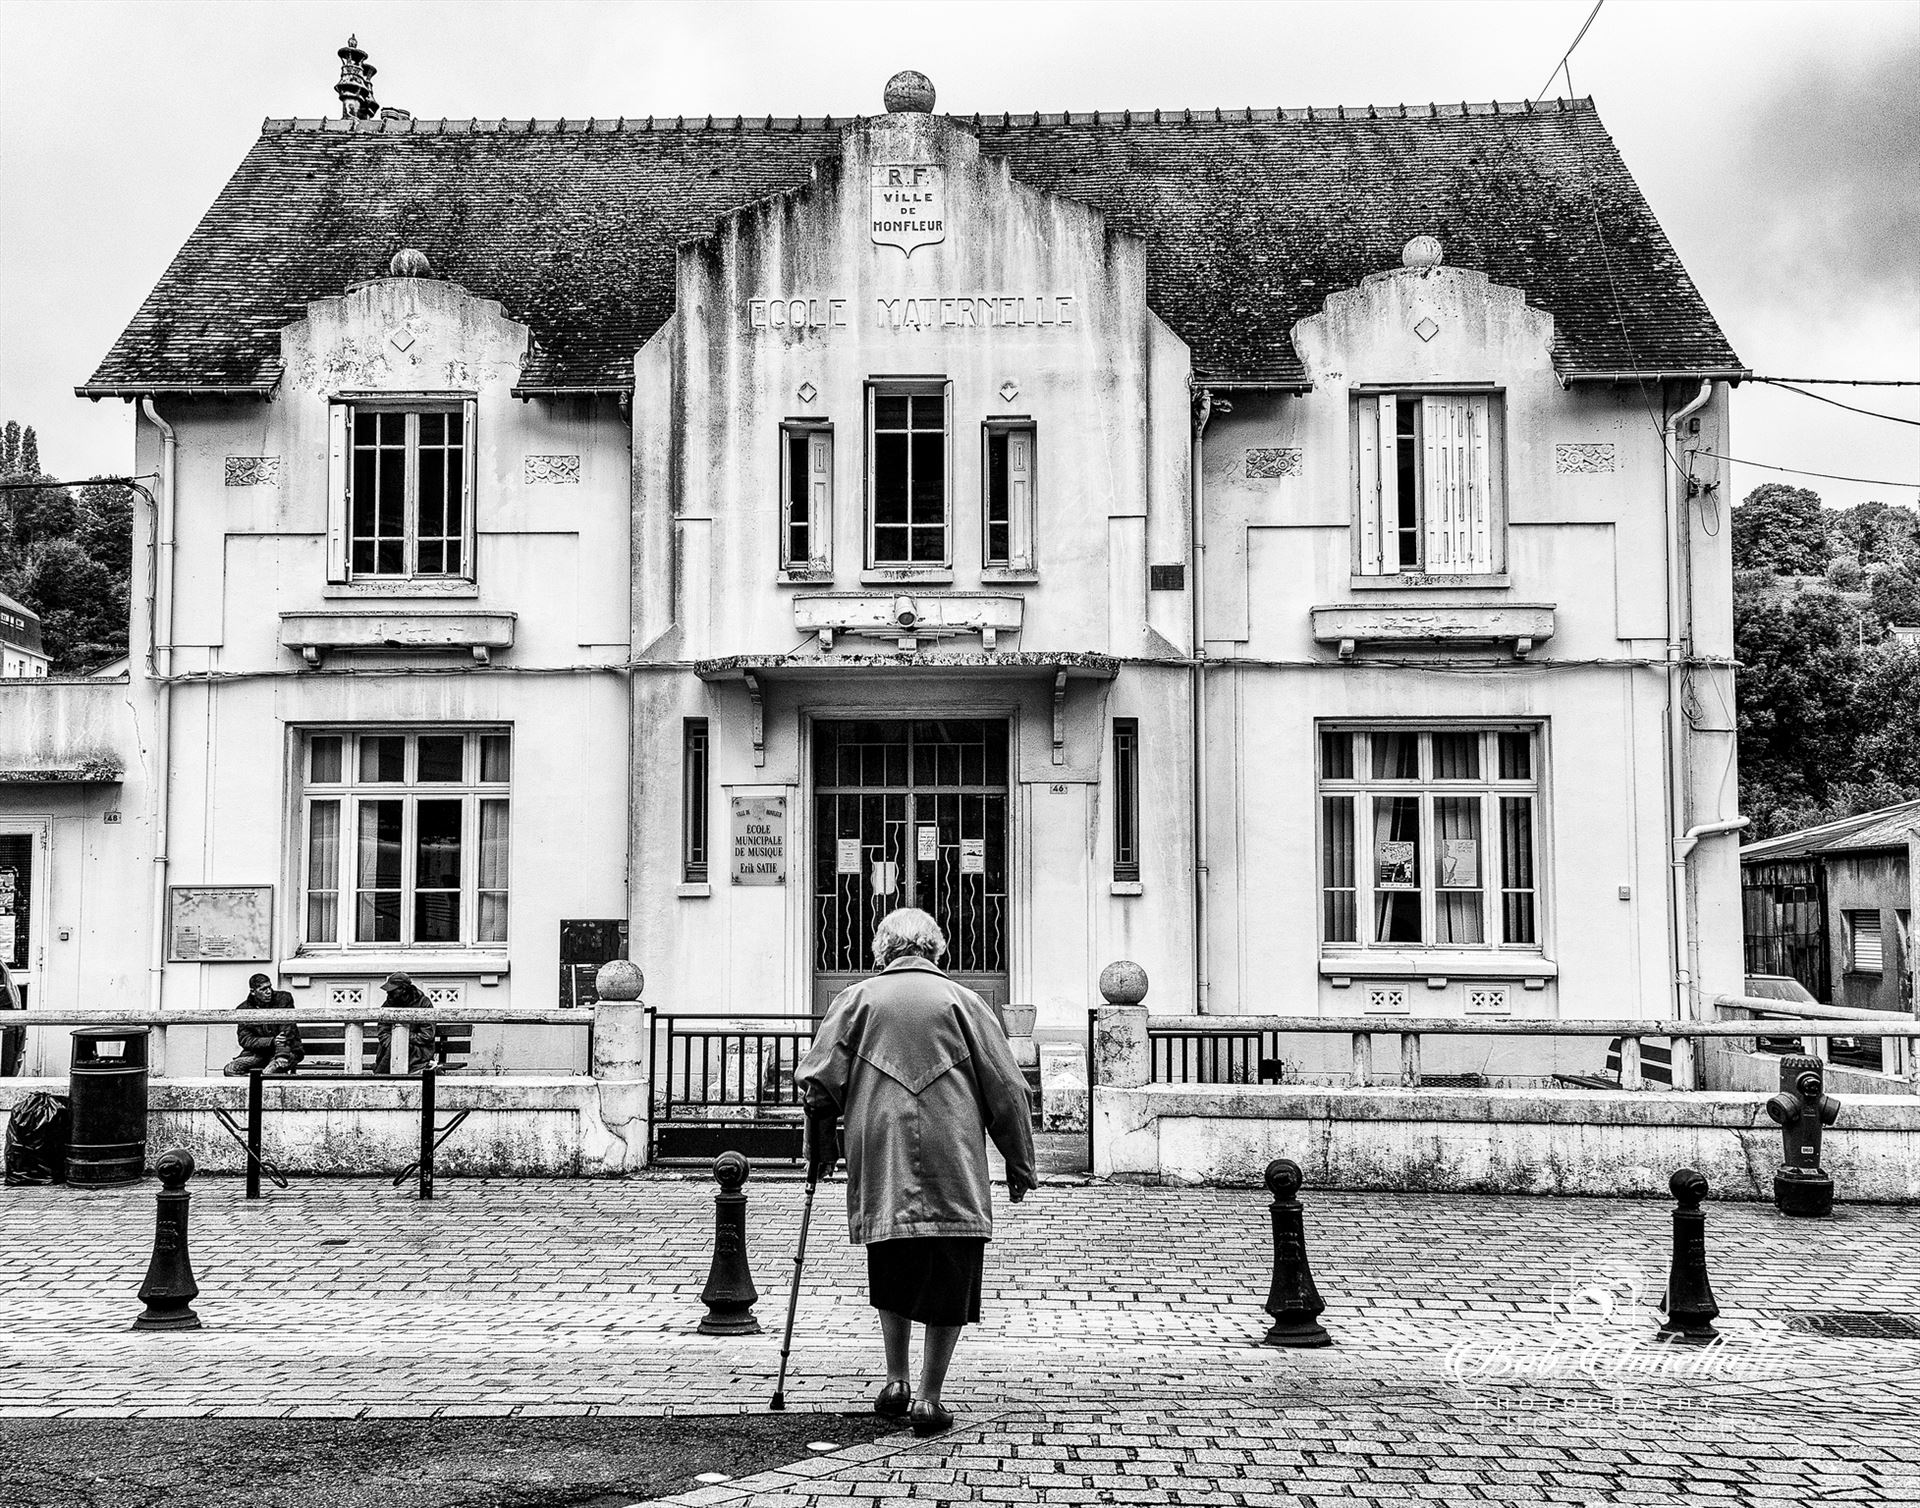 Old Building In Honfleur Honfleur France 2014 Winner Of 5 Awards by Buckmaster